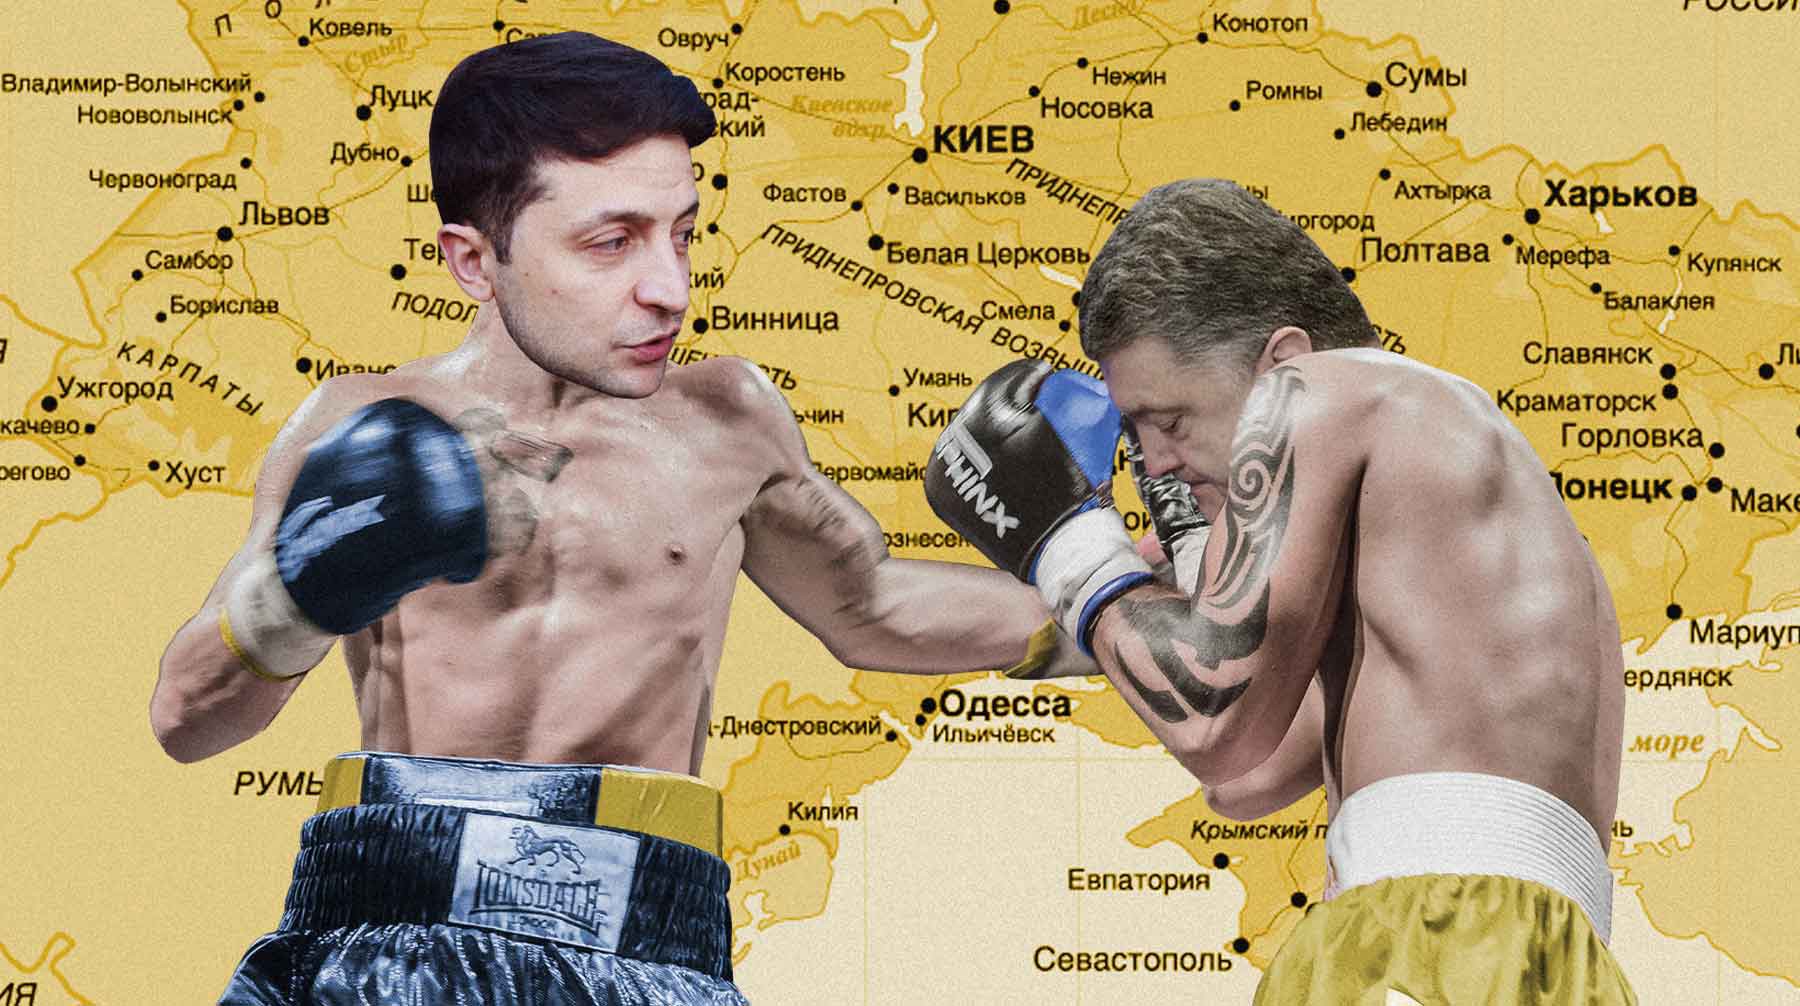 Dailystorm - Порошенко vs Зеленский. Какие слабые стороны помешают победить кандидатам?